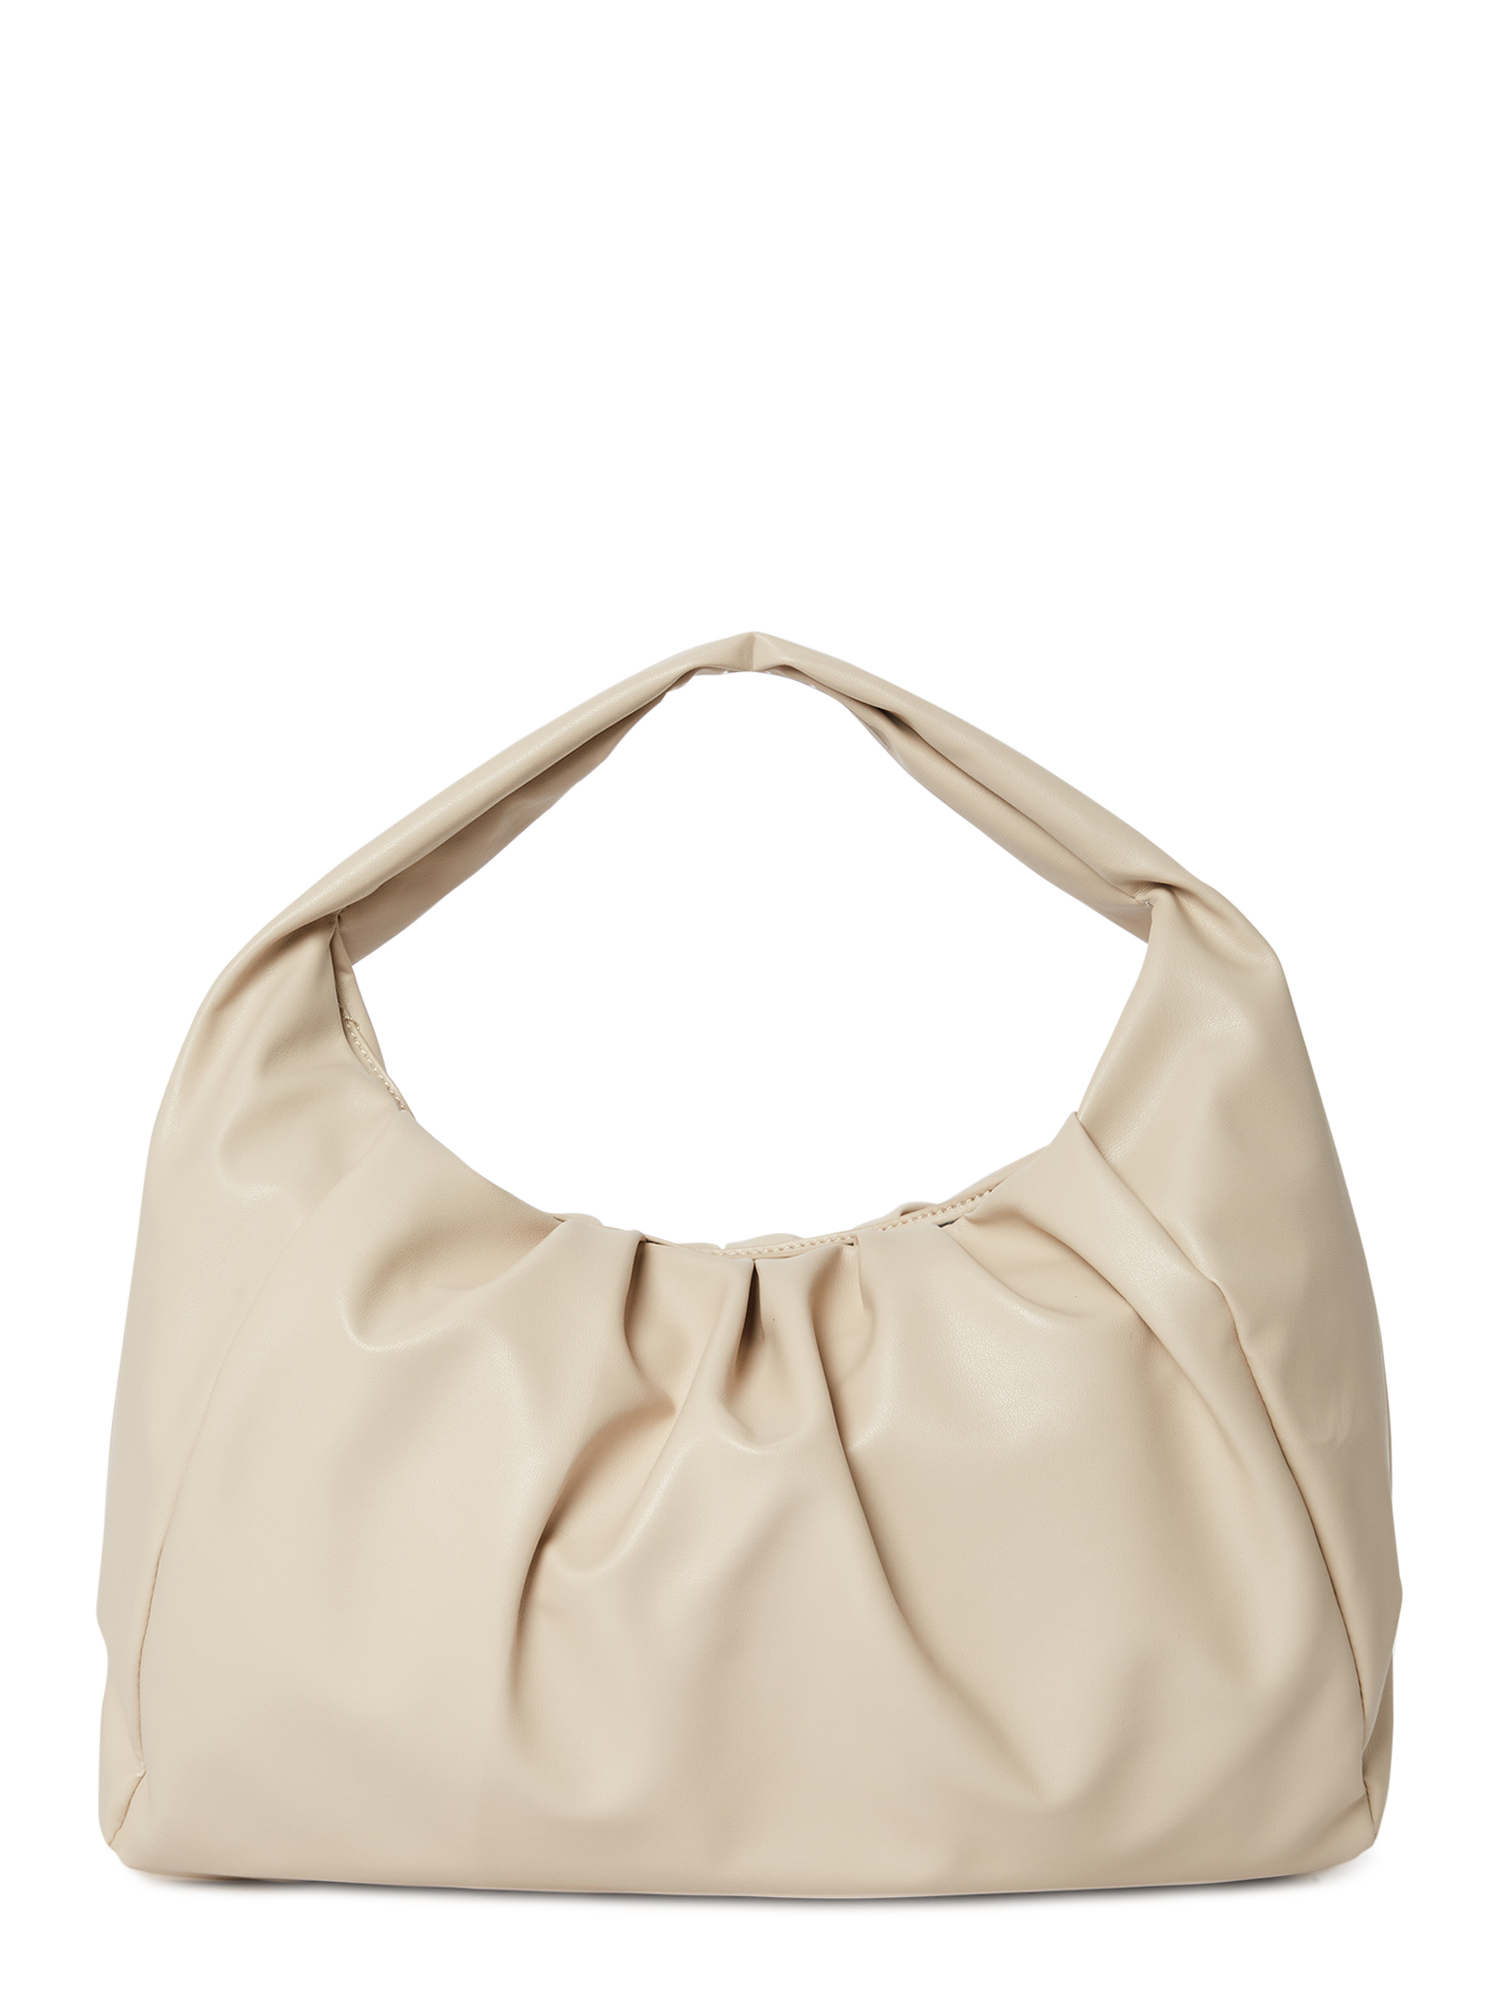 Giselle Paris Women's Adele Vegan Leather Ruched Shoulder Bag - image 3 of 5